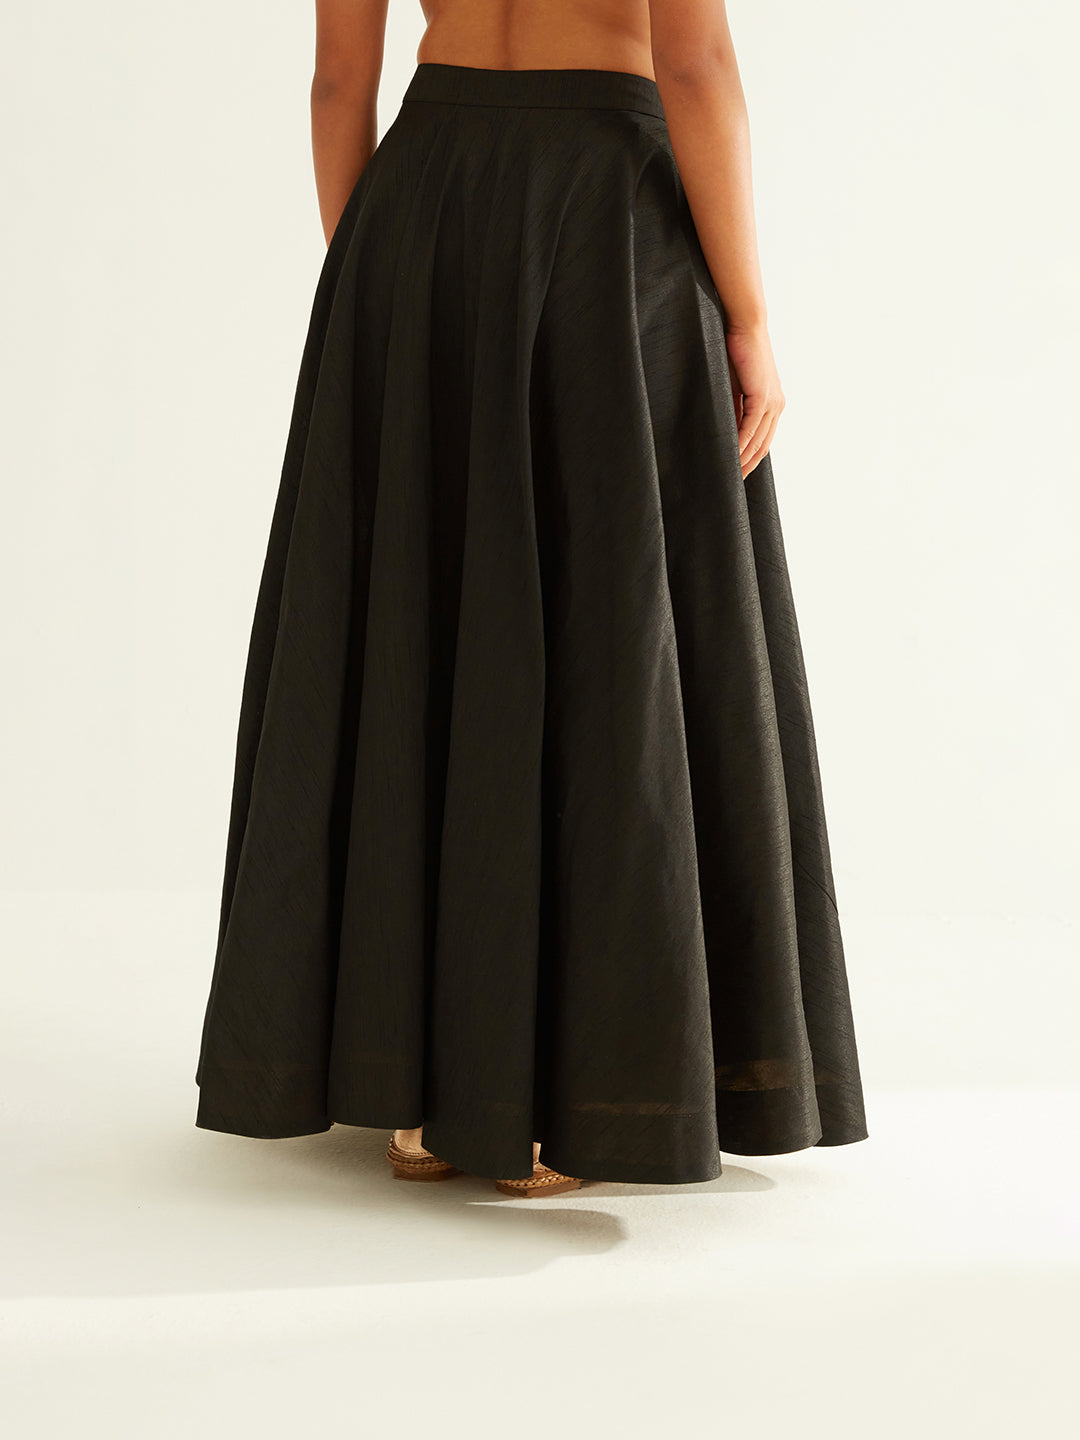 Circular skirt with contrast facing